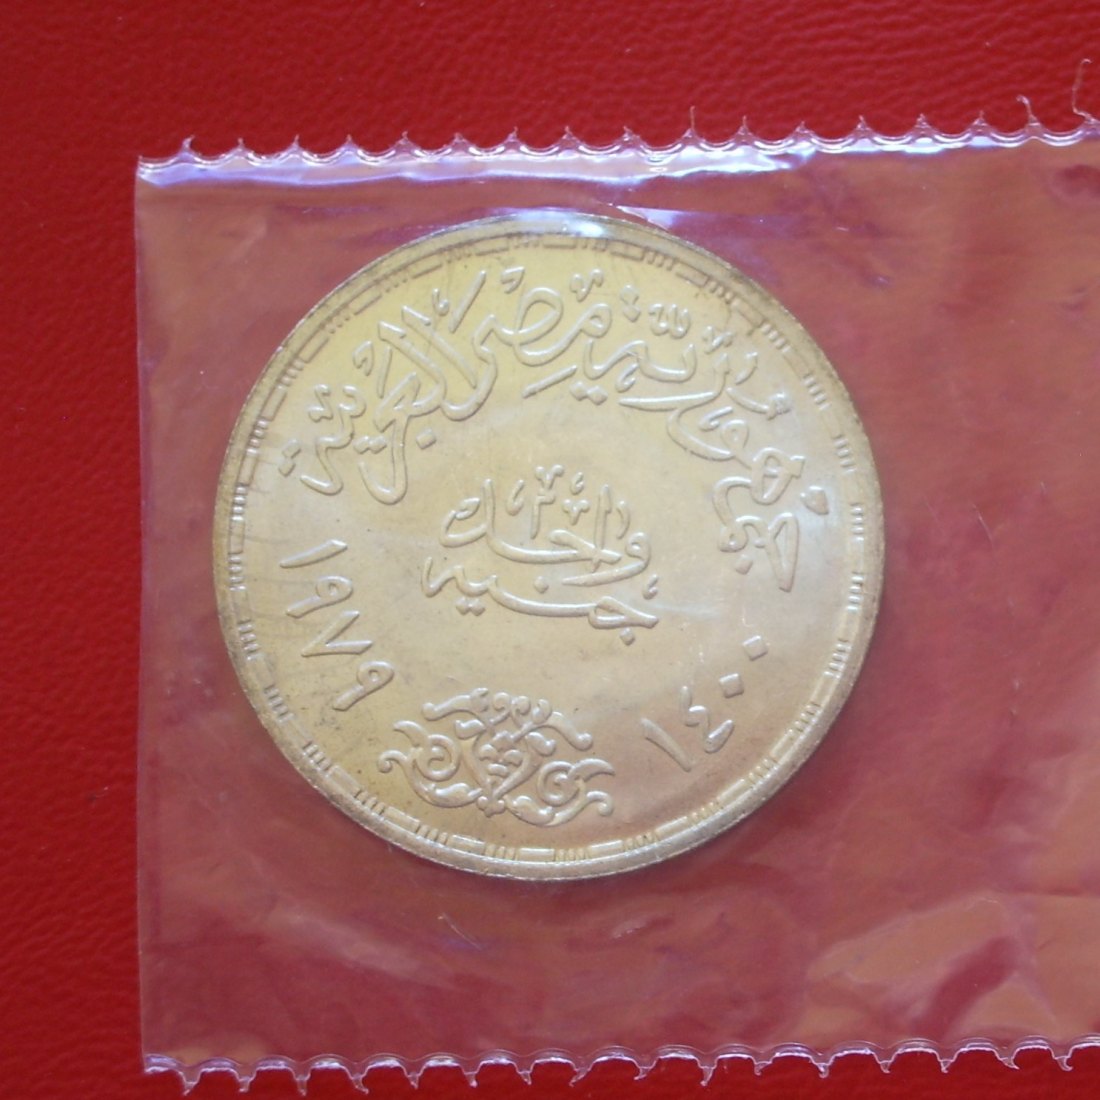  1 Gunayh / Pound Ägypten 1400/1979 st in orig. Folie! SILBER / NUR 97.000 Ex.!   